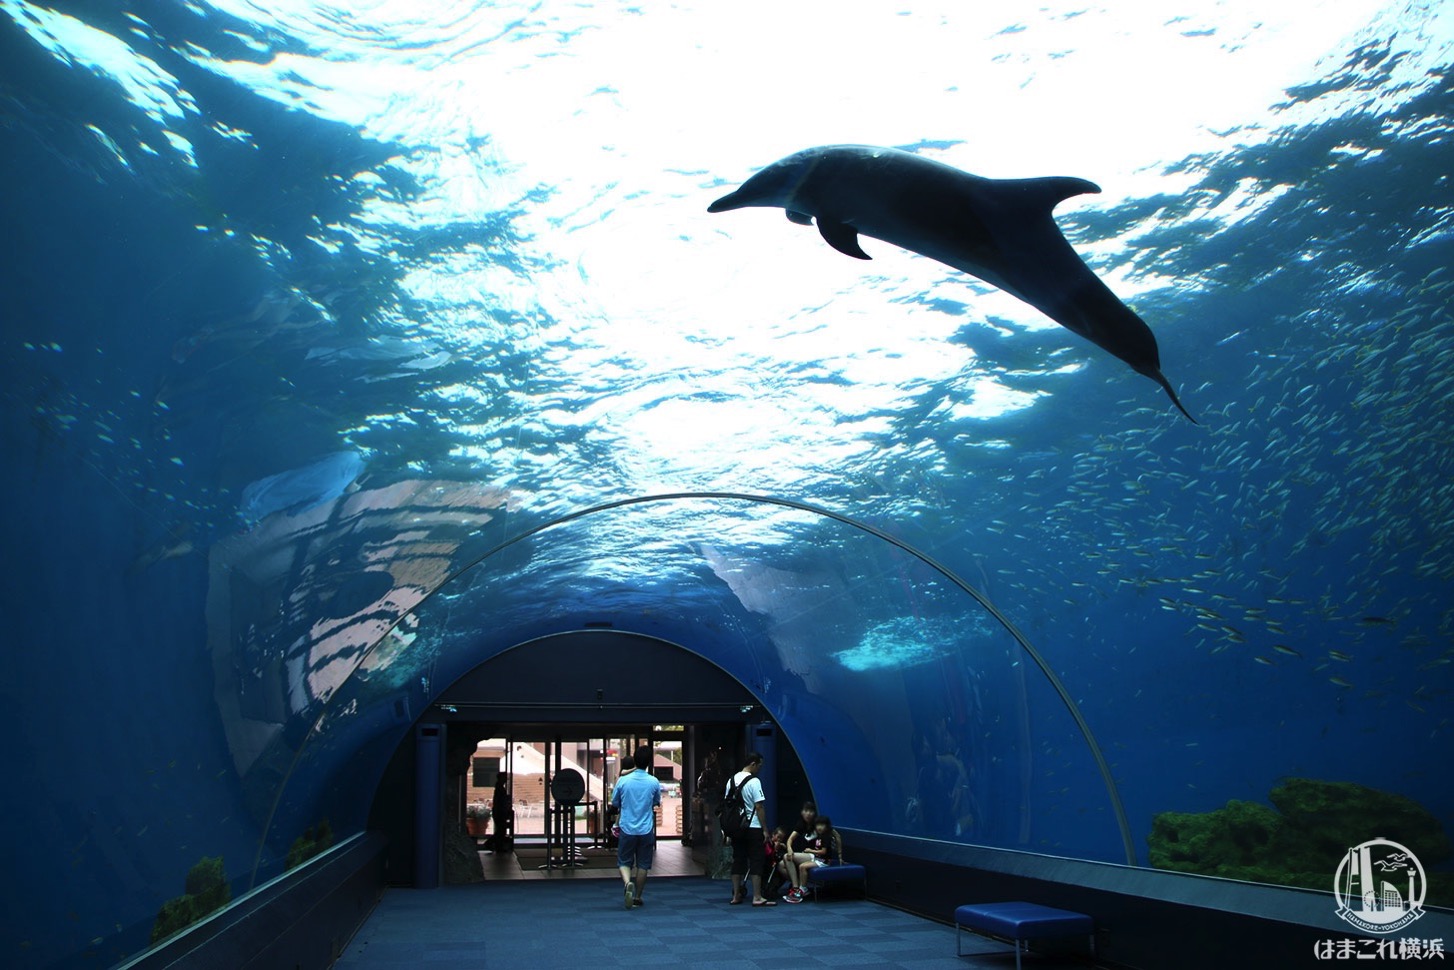 八景島シーパラ ドルフィンファンタジー イルカが泳ぐアーチ水槽で幻想的海中散歩 はまこれ横浜